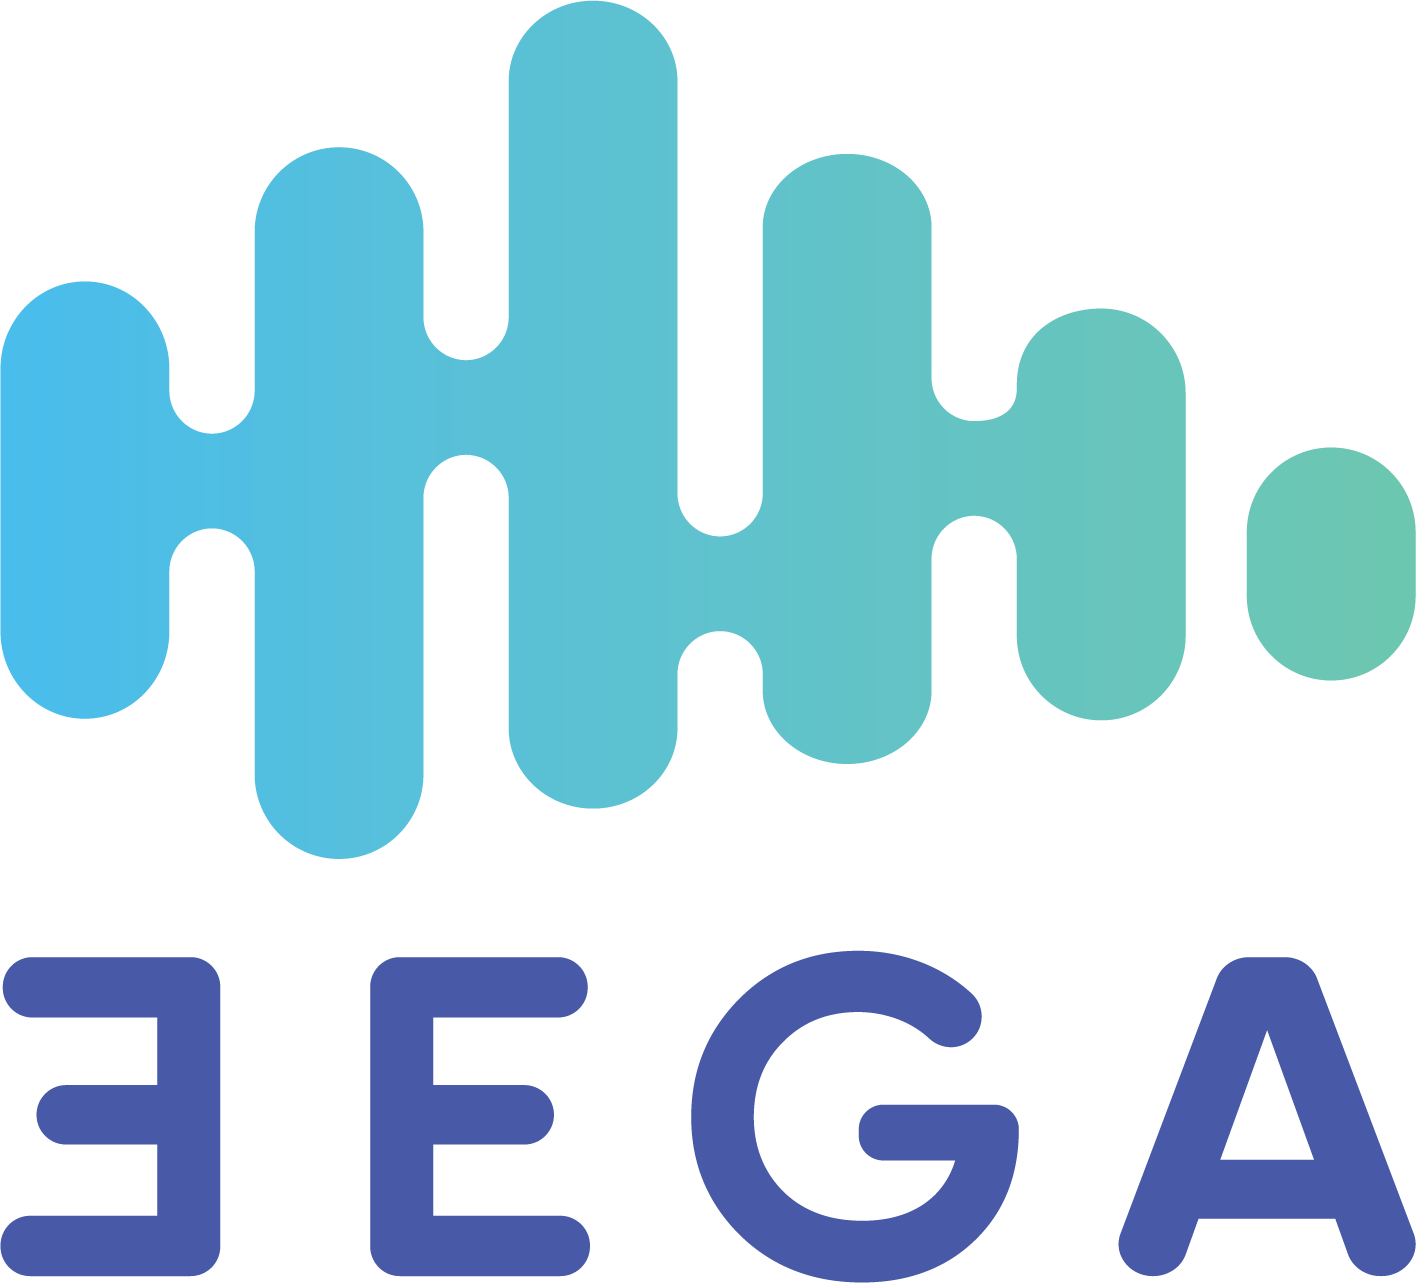 3ega logo image